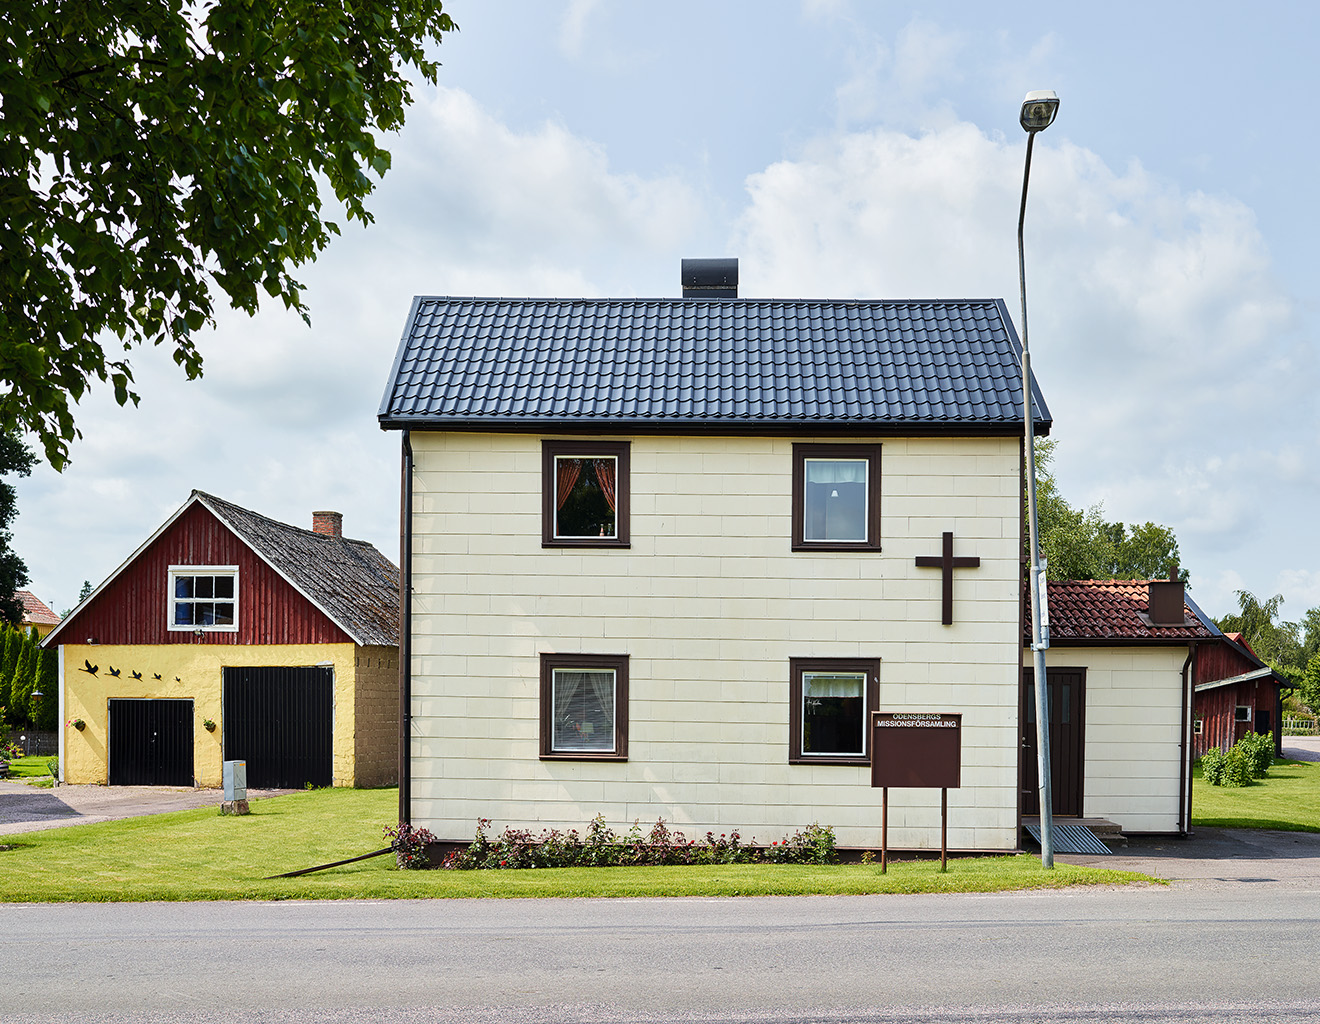 Odensberg, Västergötland, July 8, 2013